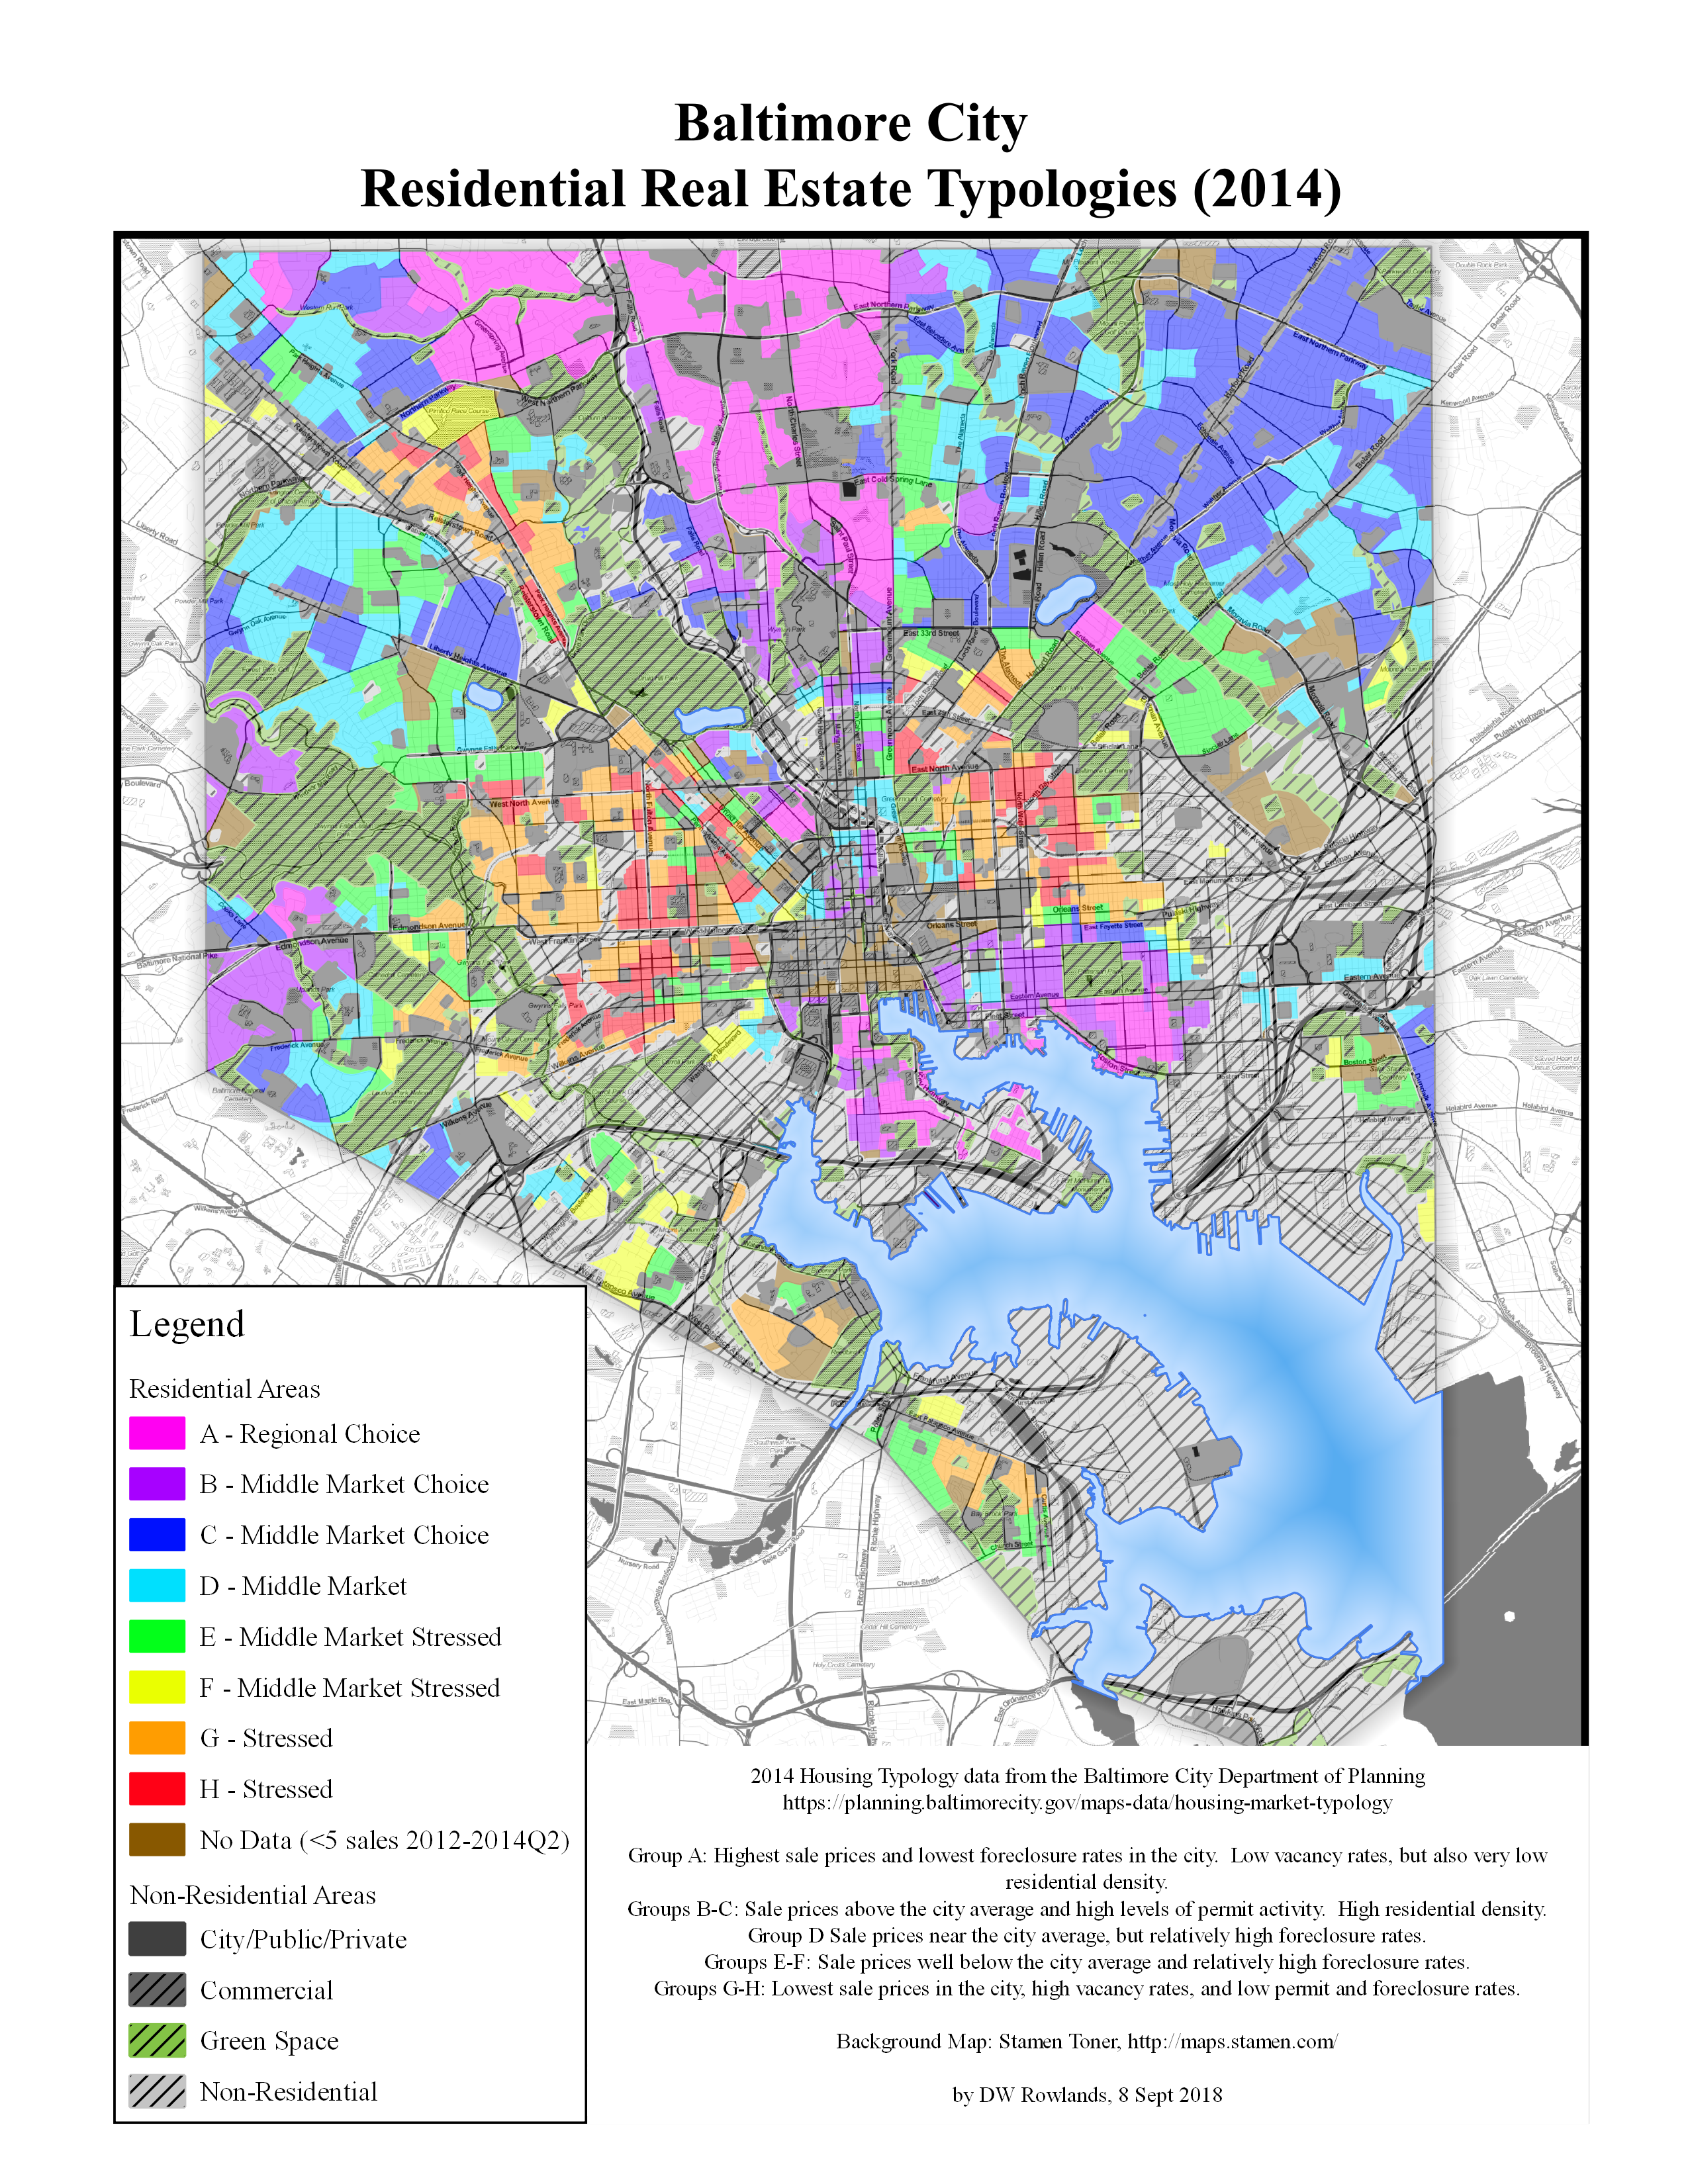 Map of Baltimore Housing Typology